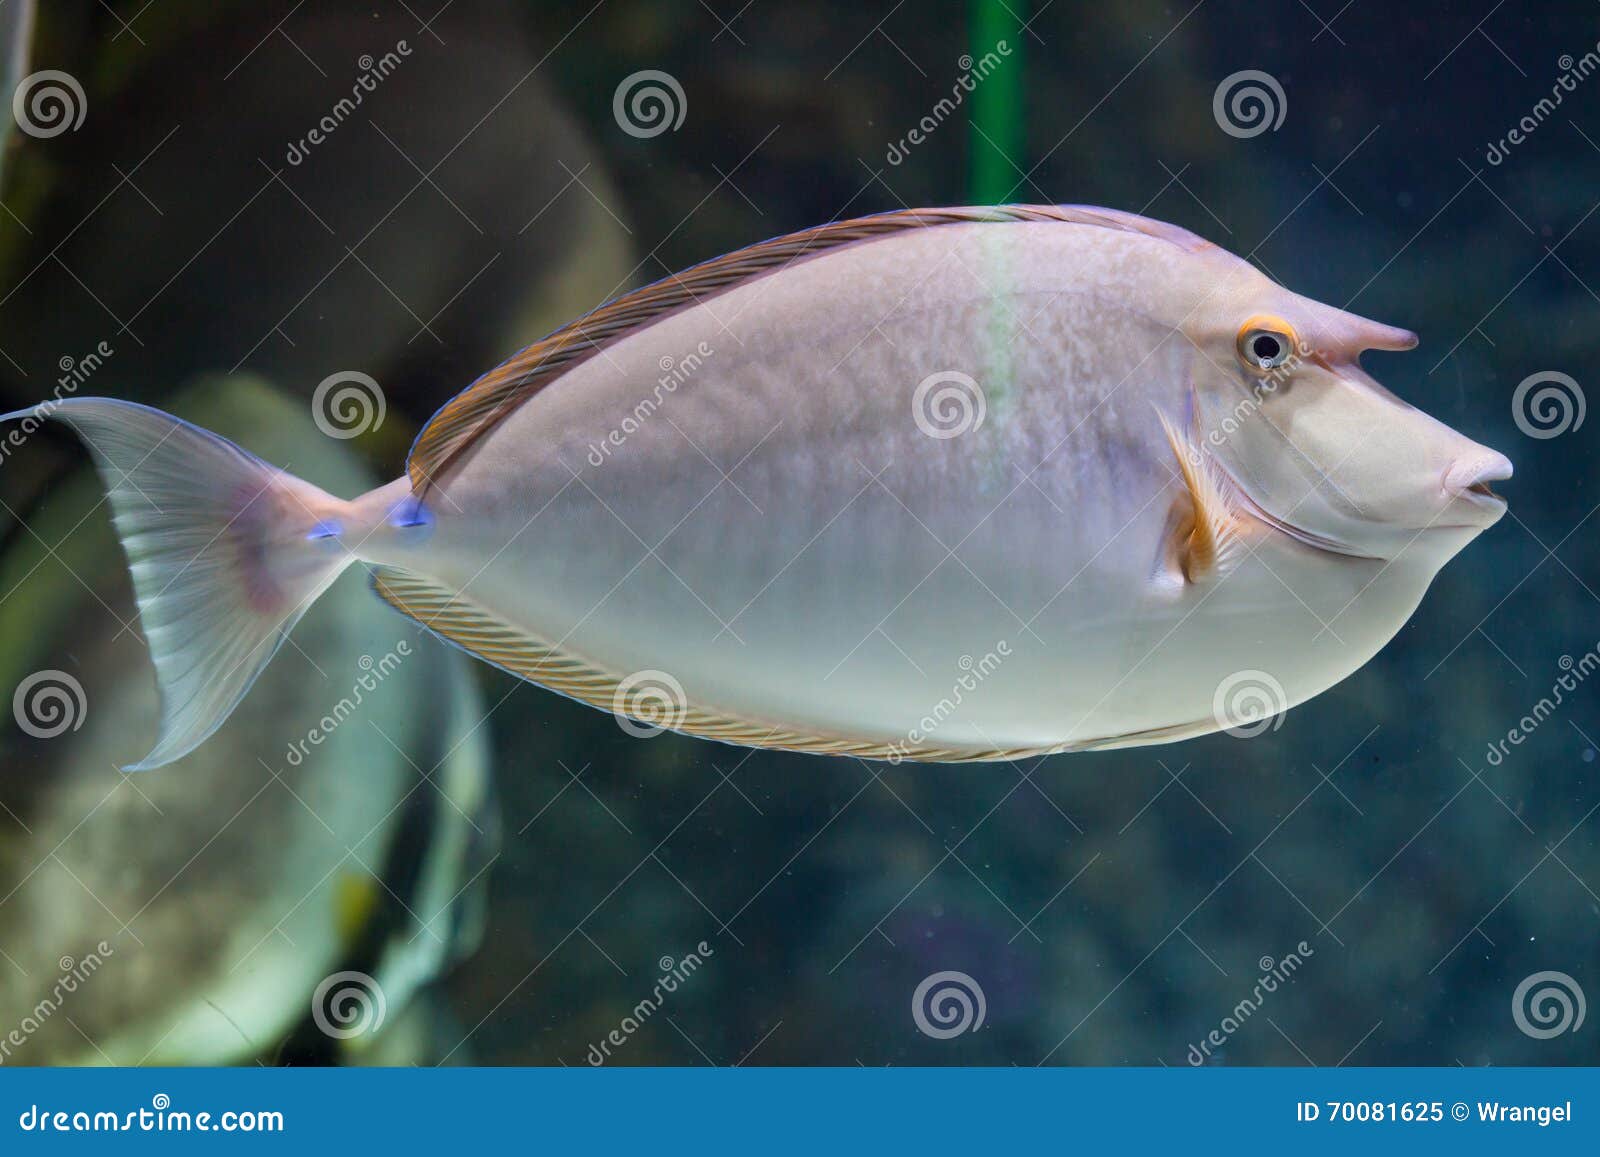 bluespine unicornfish (naso unicornis).